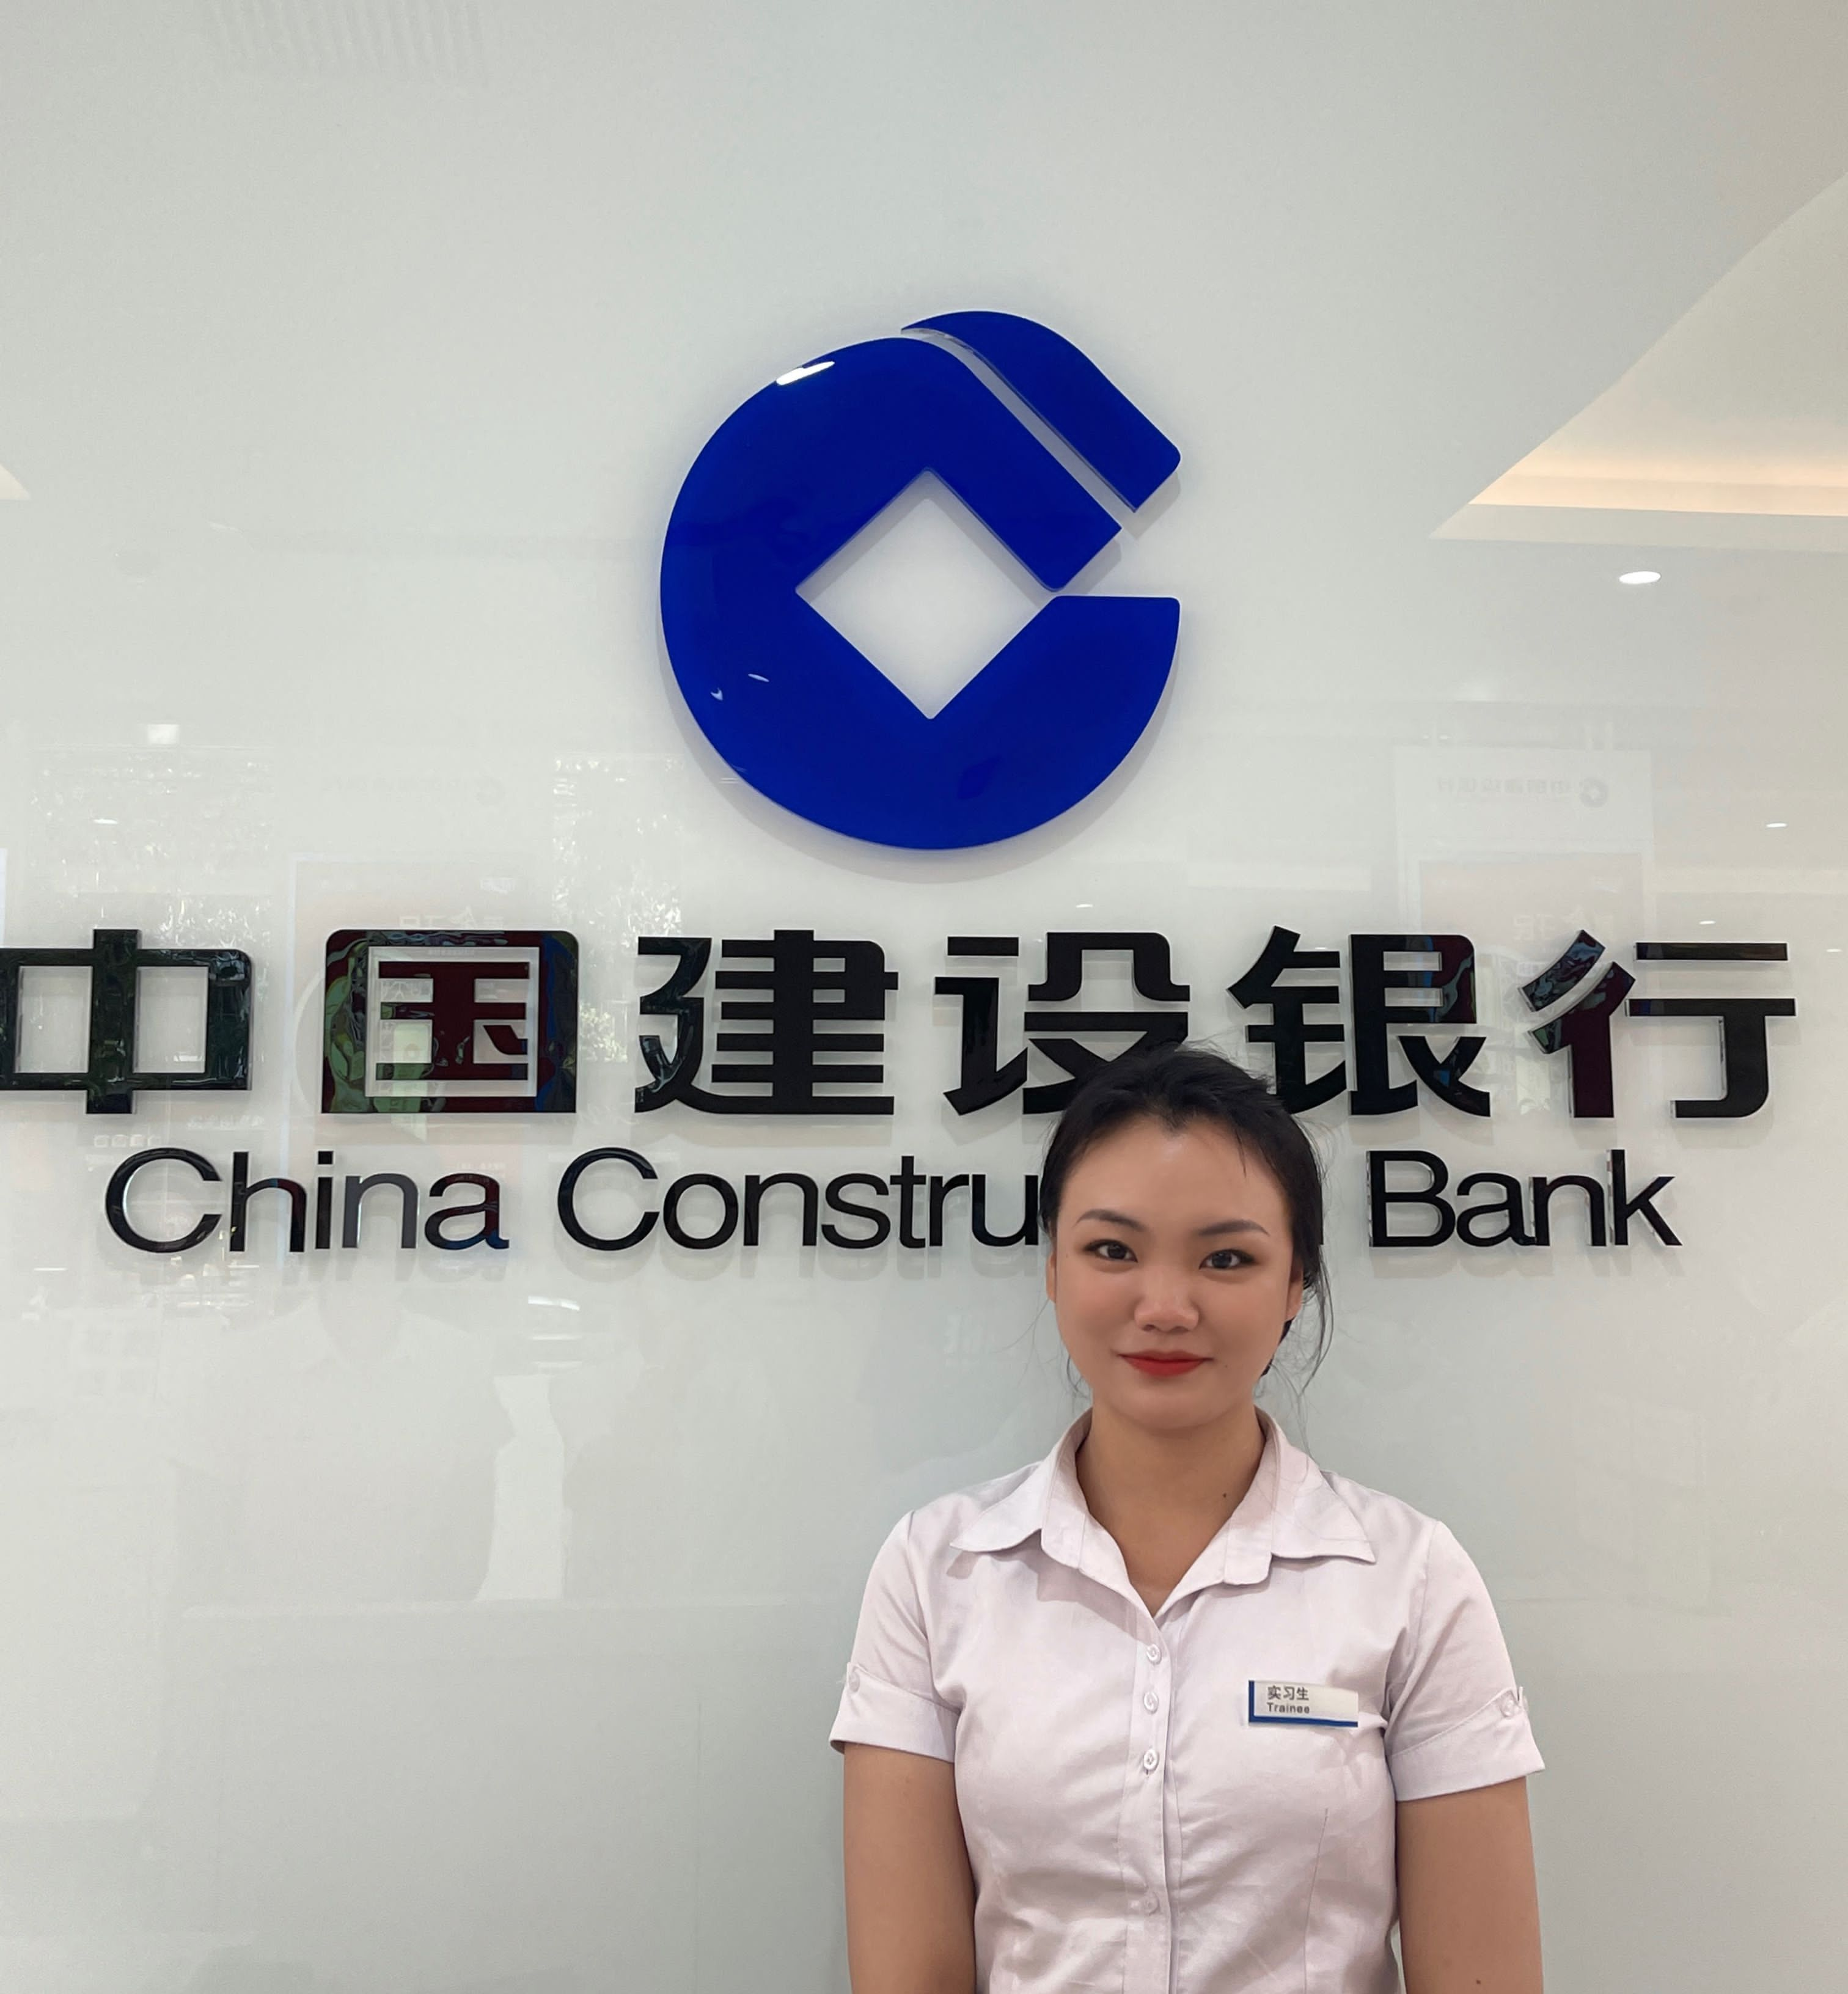 天道酬勤，越努力越幸运——黄慧叶同学于中国建设银行实习经历